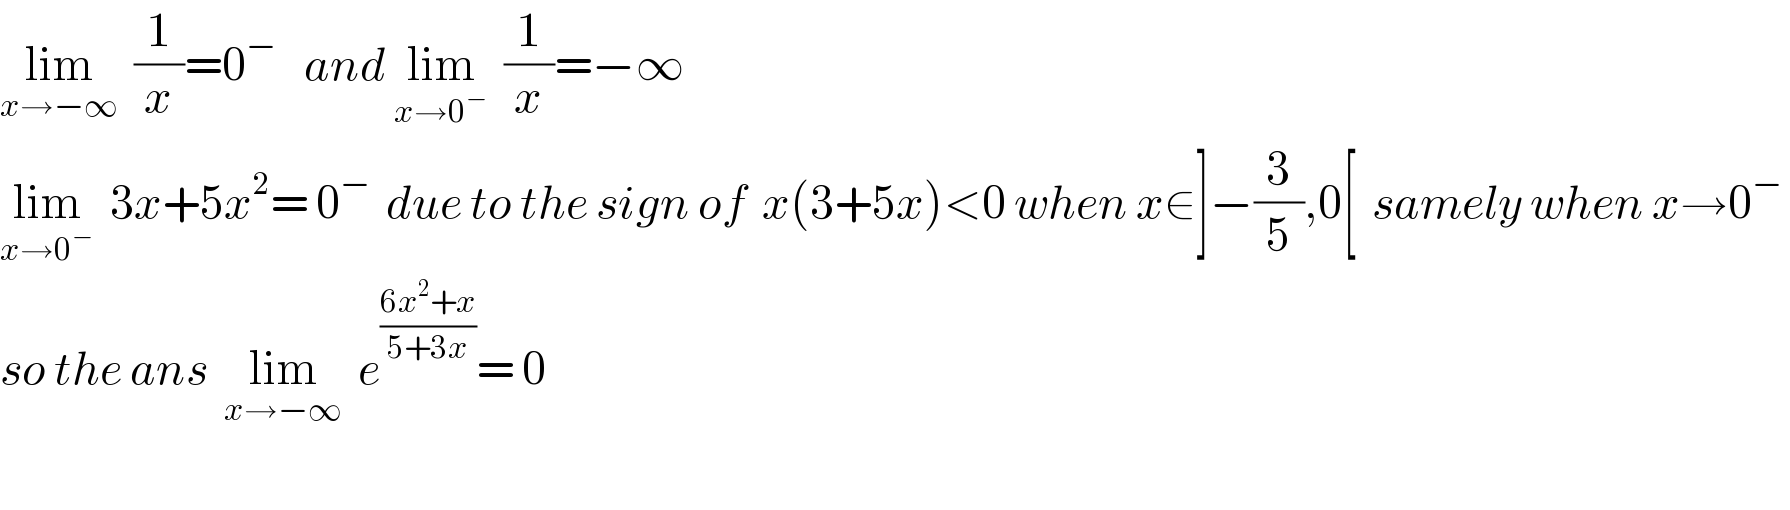 lim_(x→−∞)   (1/x)=0^(−  )   and lim_(x→0^− )   (1/x)=−∞    lim_(x→0^− )   3x+5x^2 = 0^−   due to the sign of  x(3+5x)<0 when x∈]−(3/5),0[  samely when x→0^−    so the ans  lim_(x→−∞)   e^((6x^2 +x)/(5+3x)) = 0    